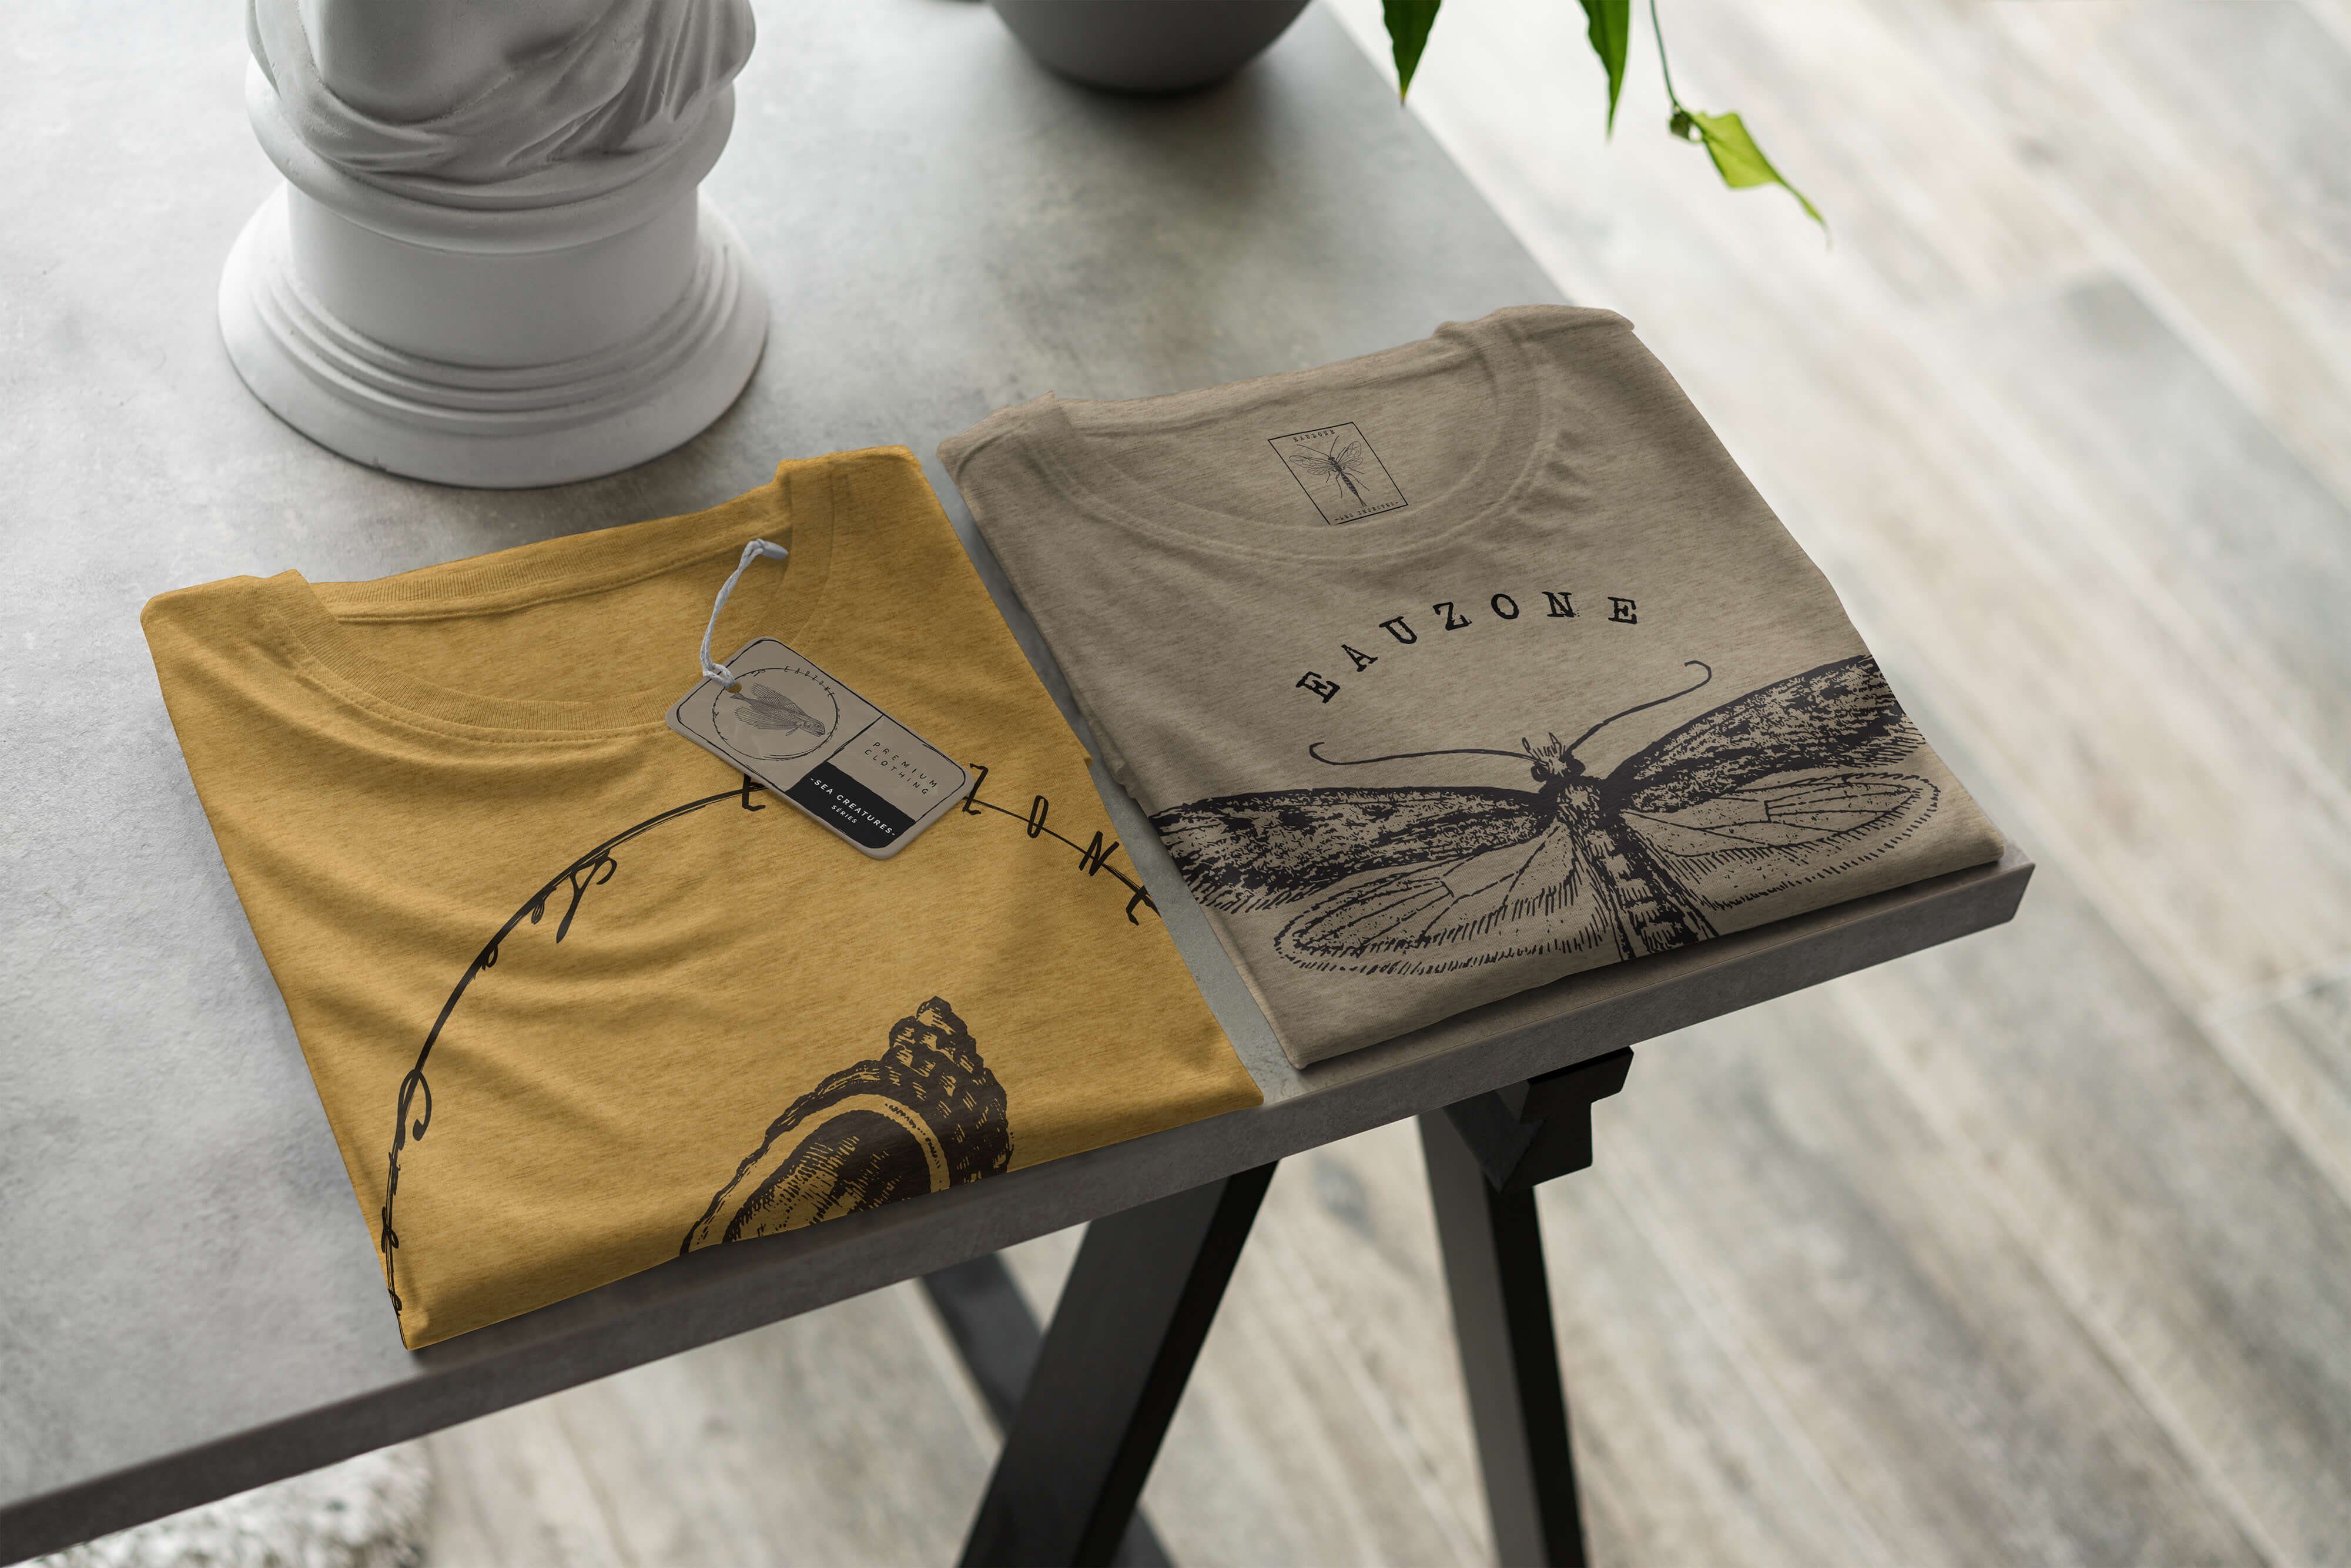 Sinus Art T-Shirt Creatures, Fische Antique - Sea / Serie: Tiefsee sportlicher und Schnitt T-Shirt Struktur 007 Sea feine Gold